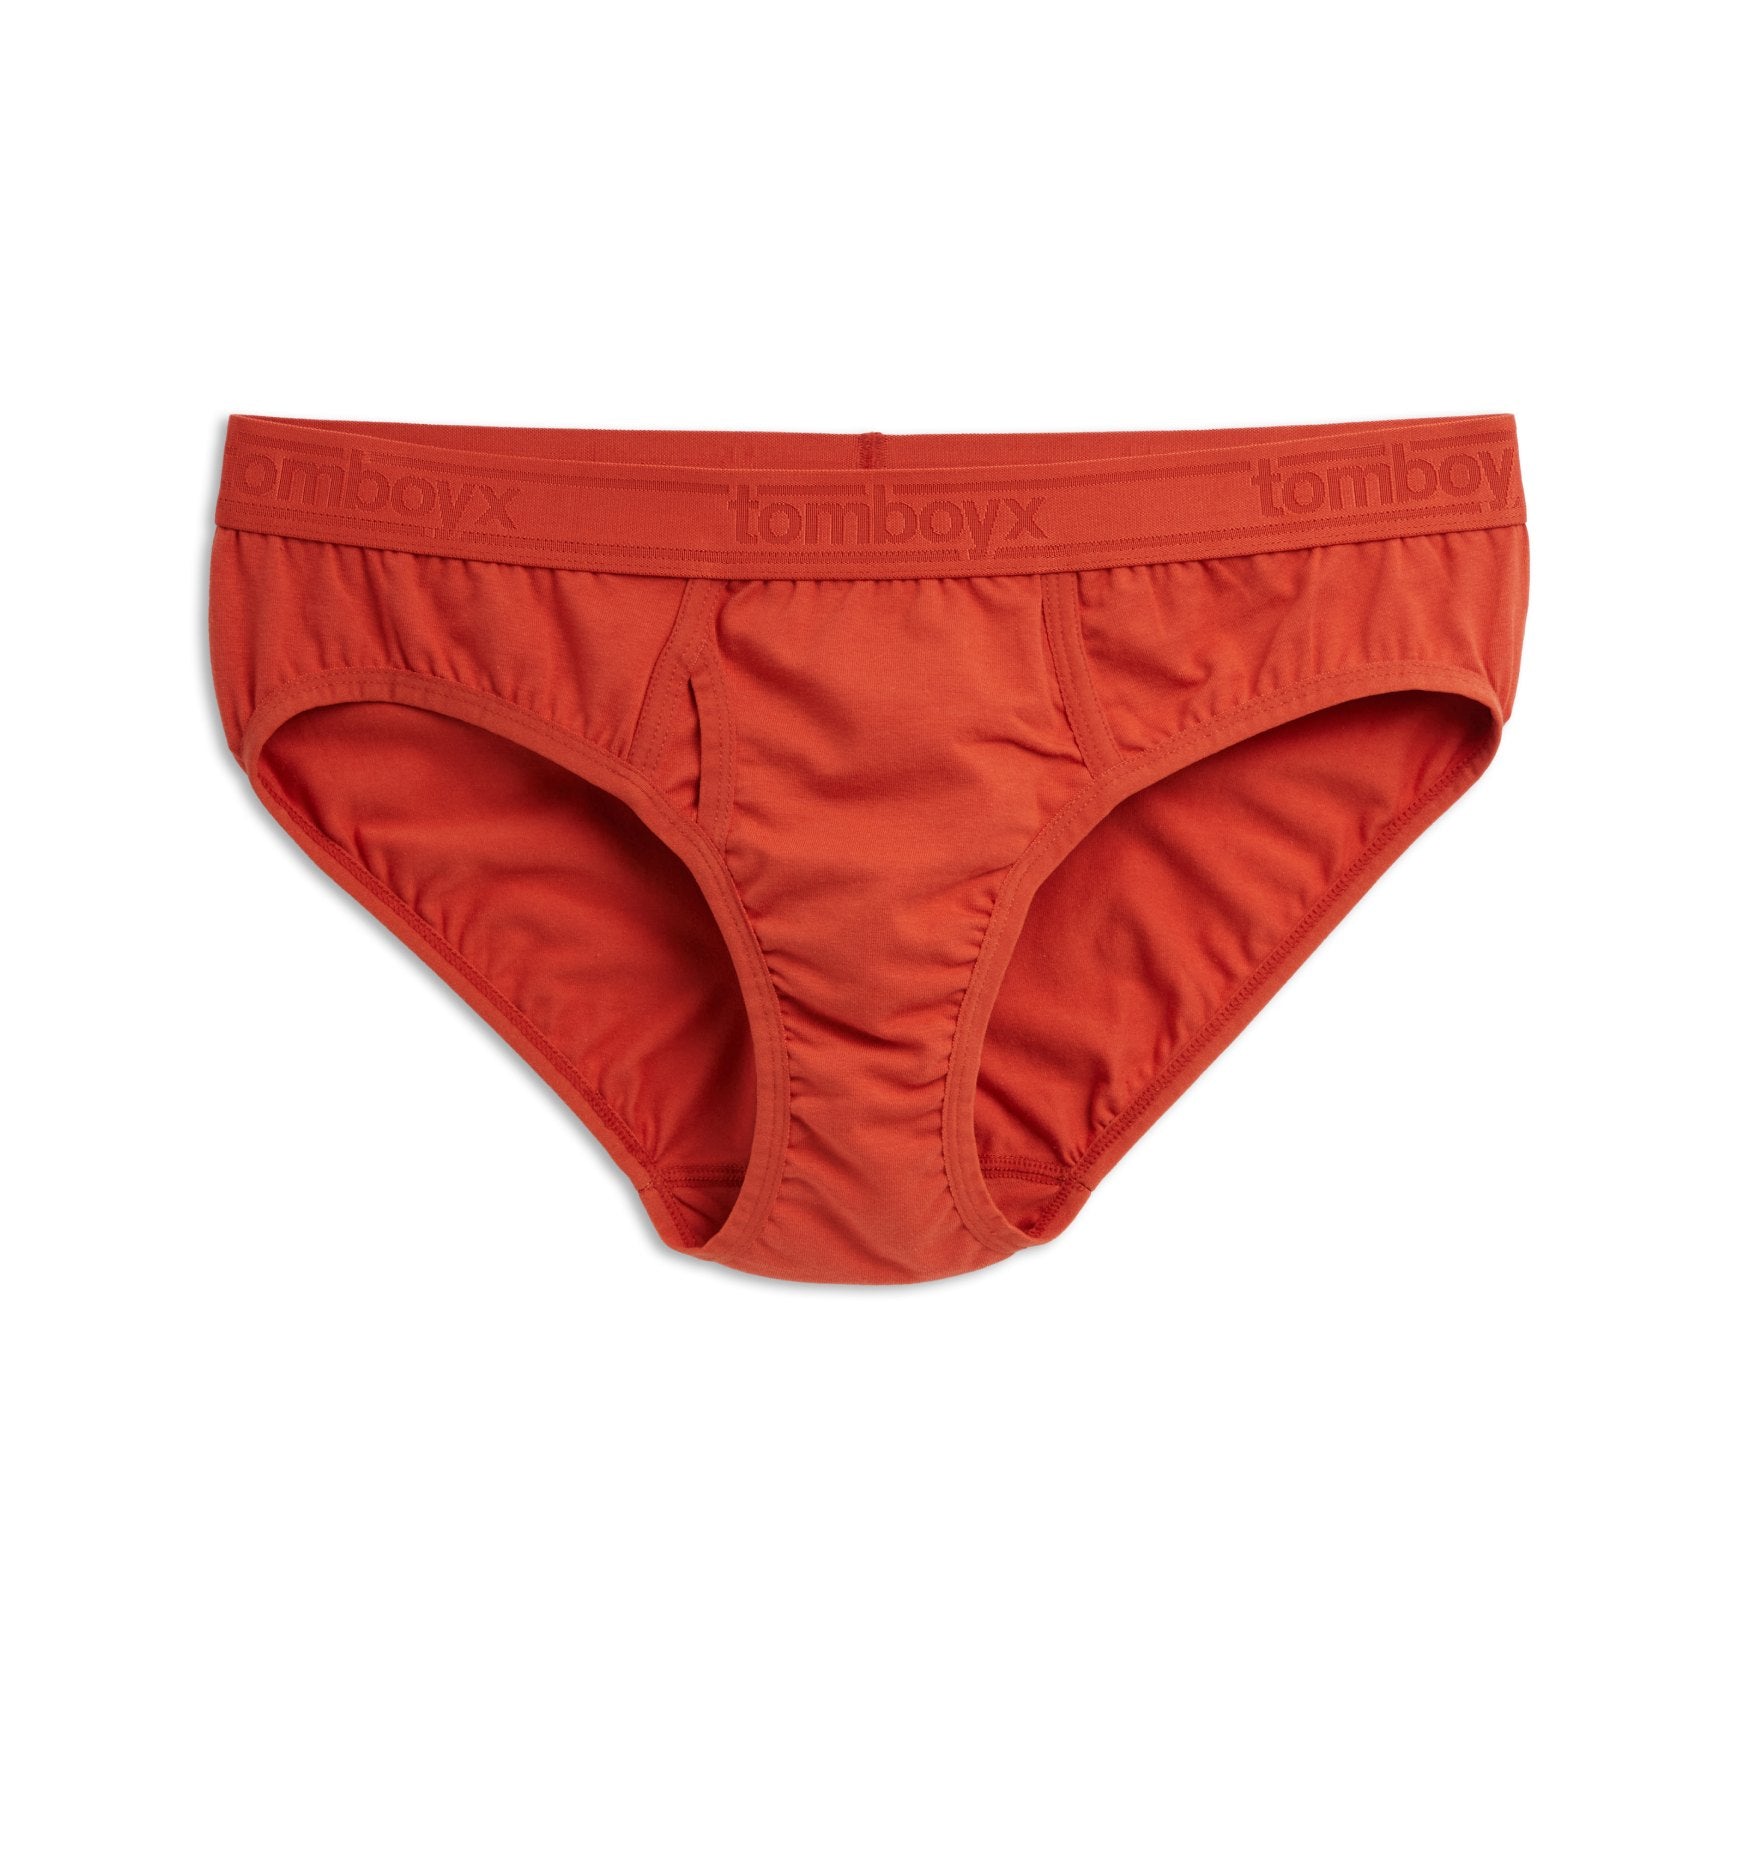 STP Underwear. The Best Transgender Underwear for You…